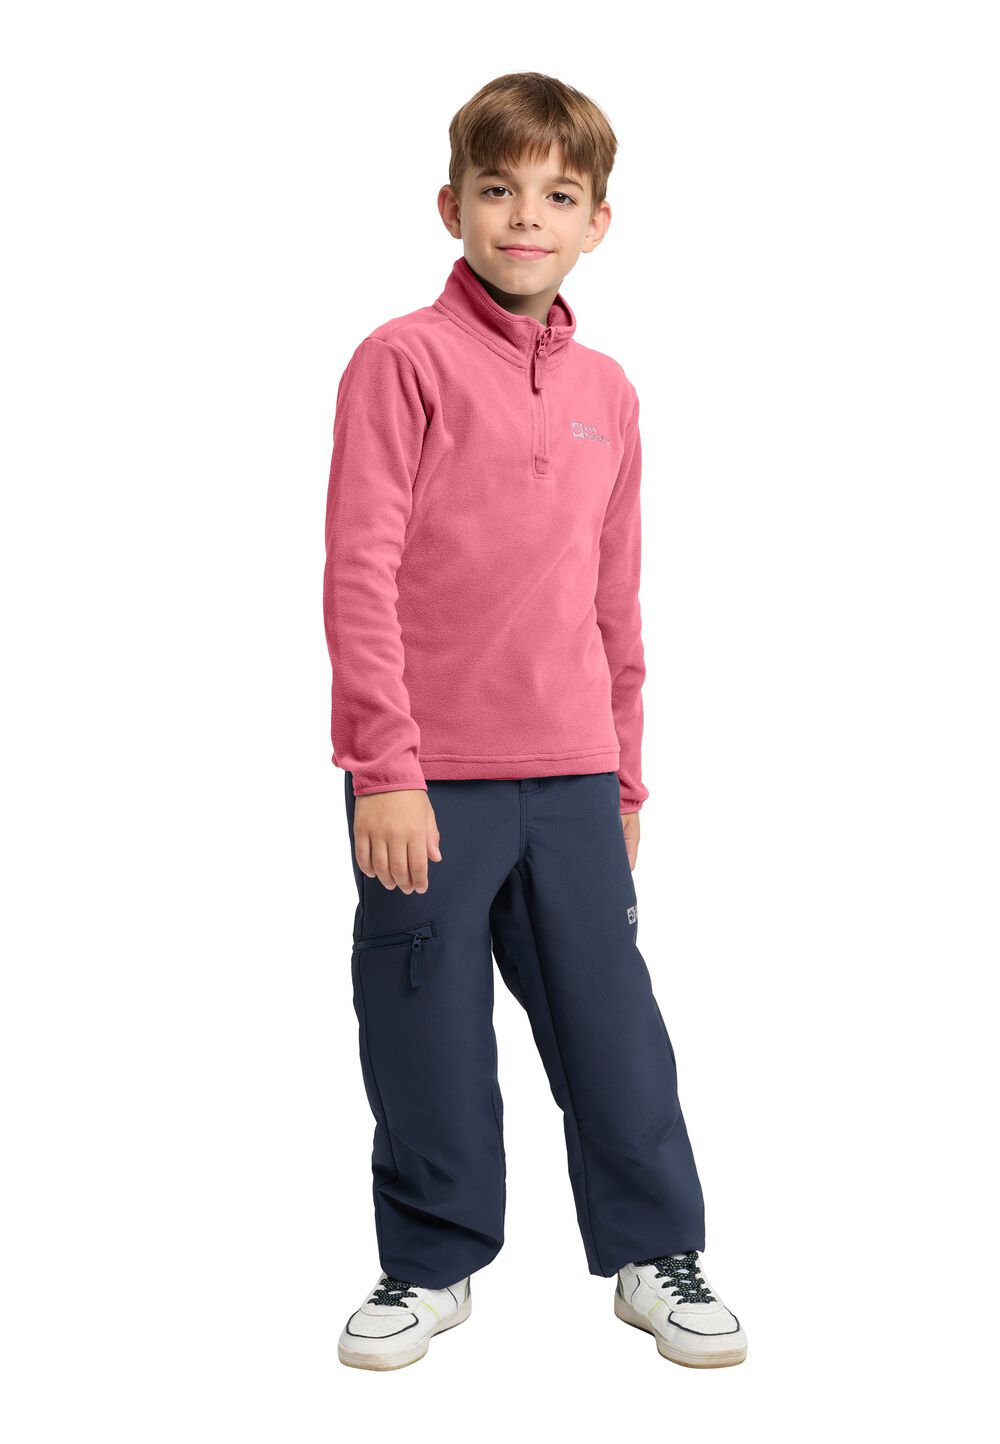 Jack Wolfskin Taunus Halfzip Kids Fleece trui Kinderen 176 soft pink soft pink